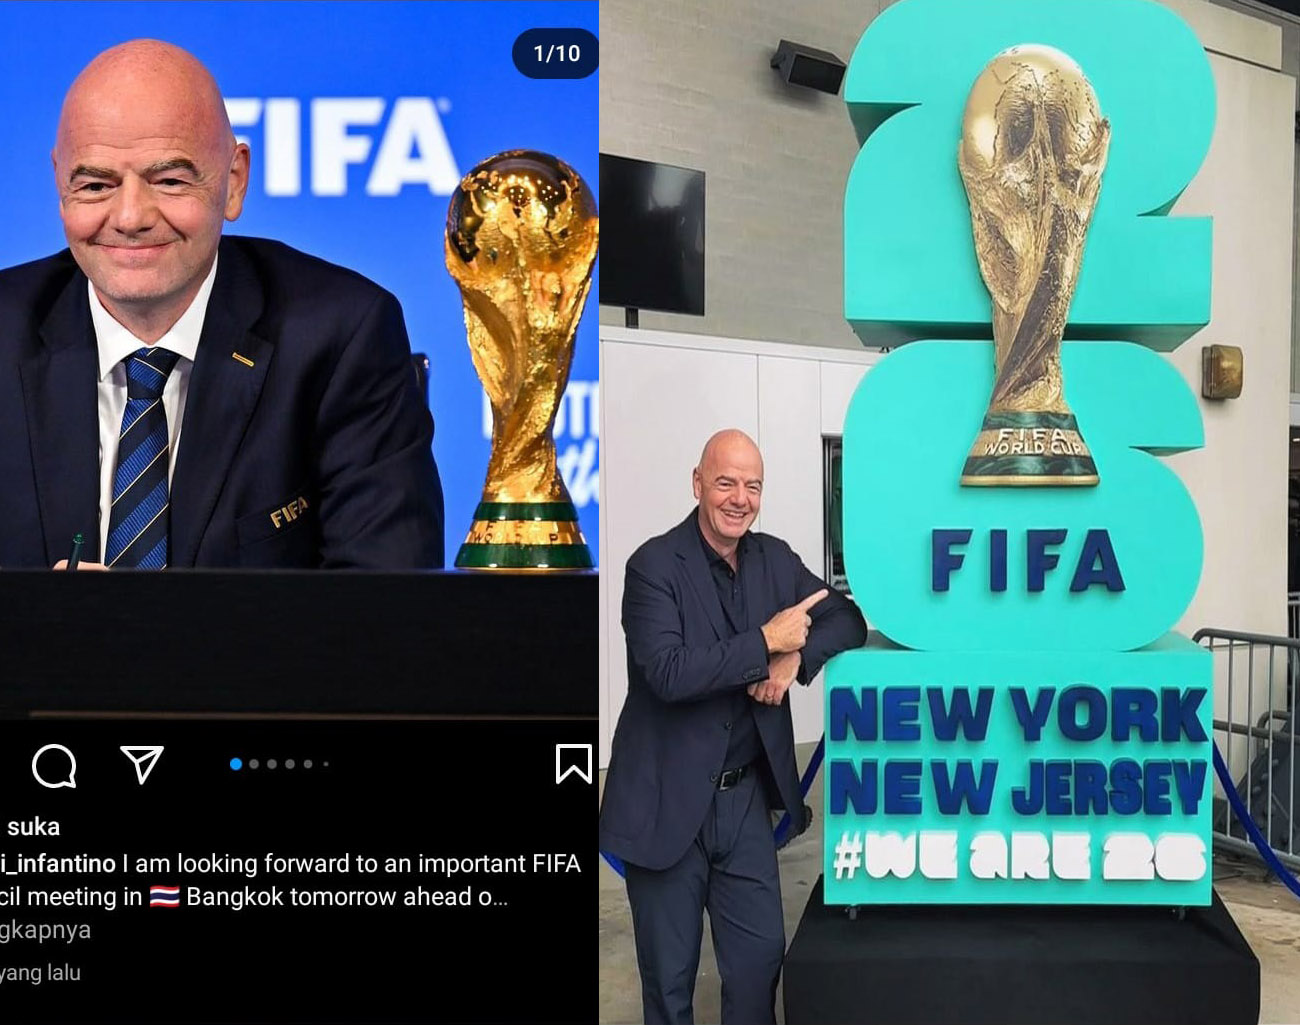 Tuan Rumah Piala Dunia 2026 New York Amerika Serikat, Presiden FIFA Ajak Penggemar Sepak Bola Ramaikan